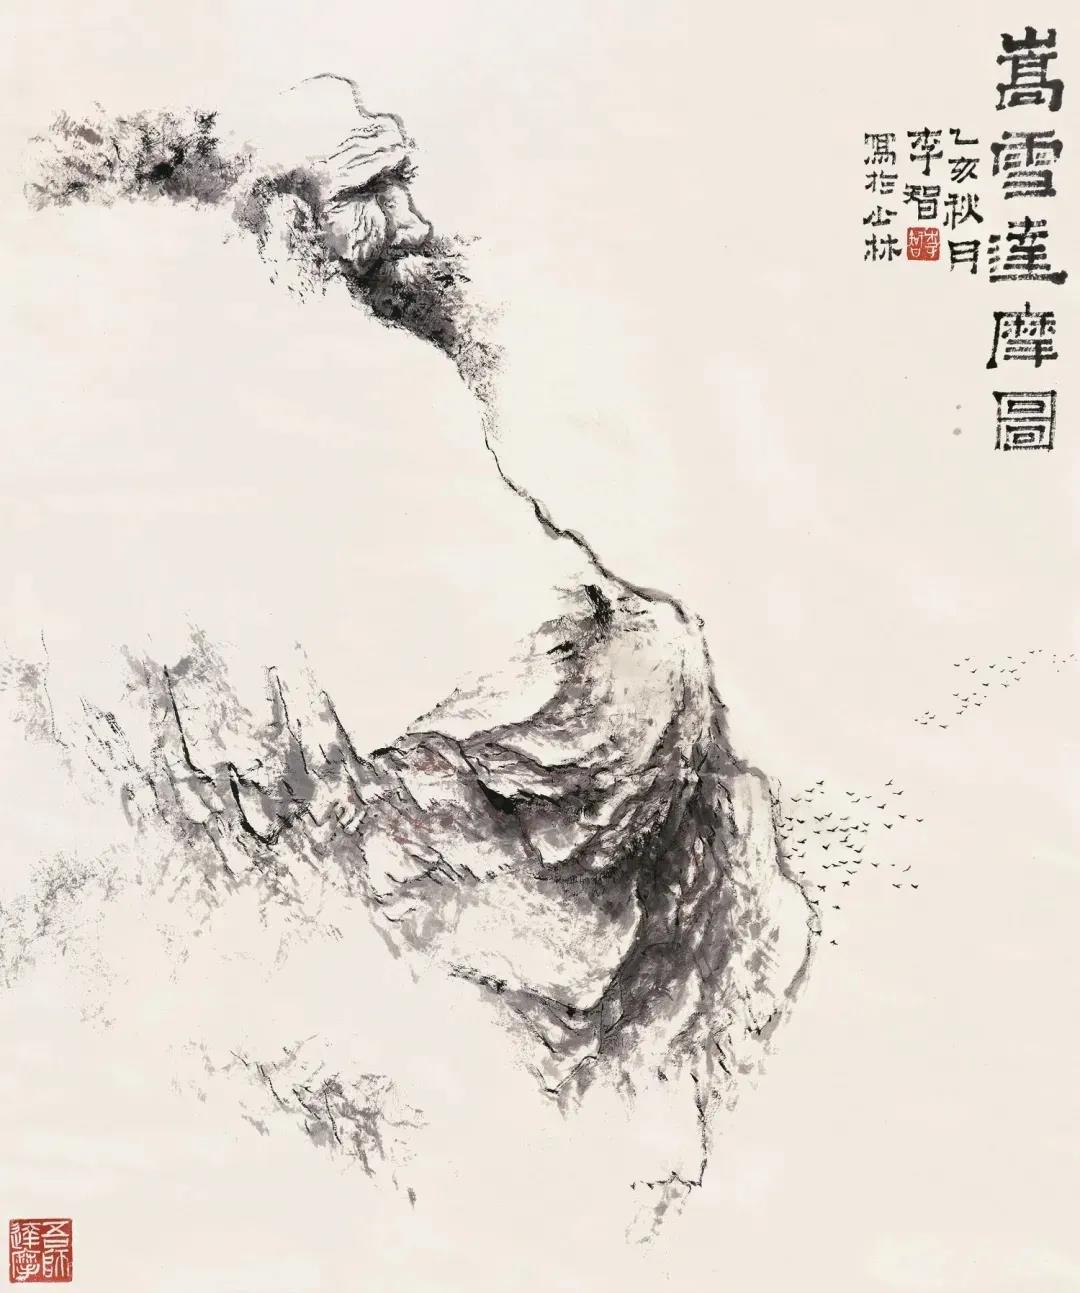 中国少林禅画第一人新郑八旬艺术家向郑州美术馆捐赠作品